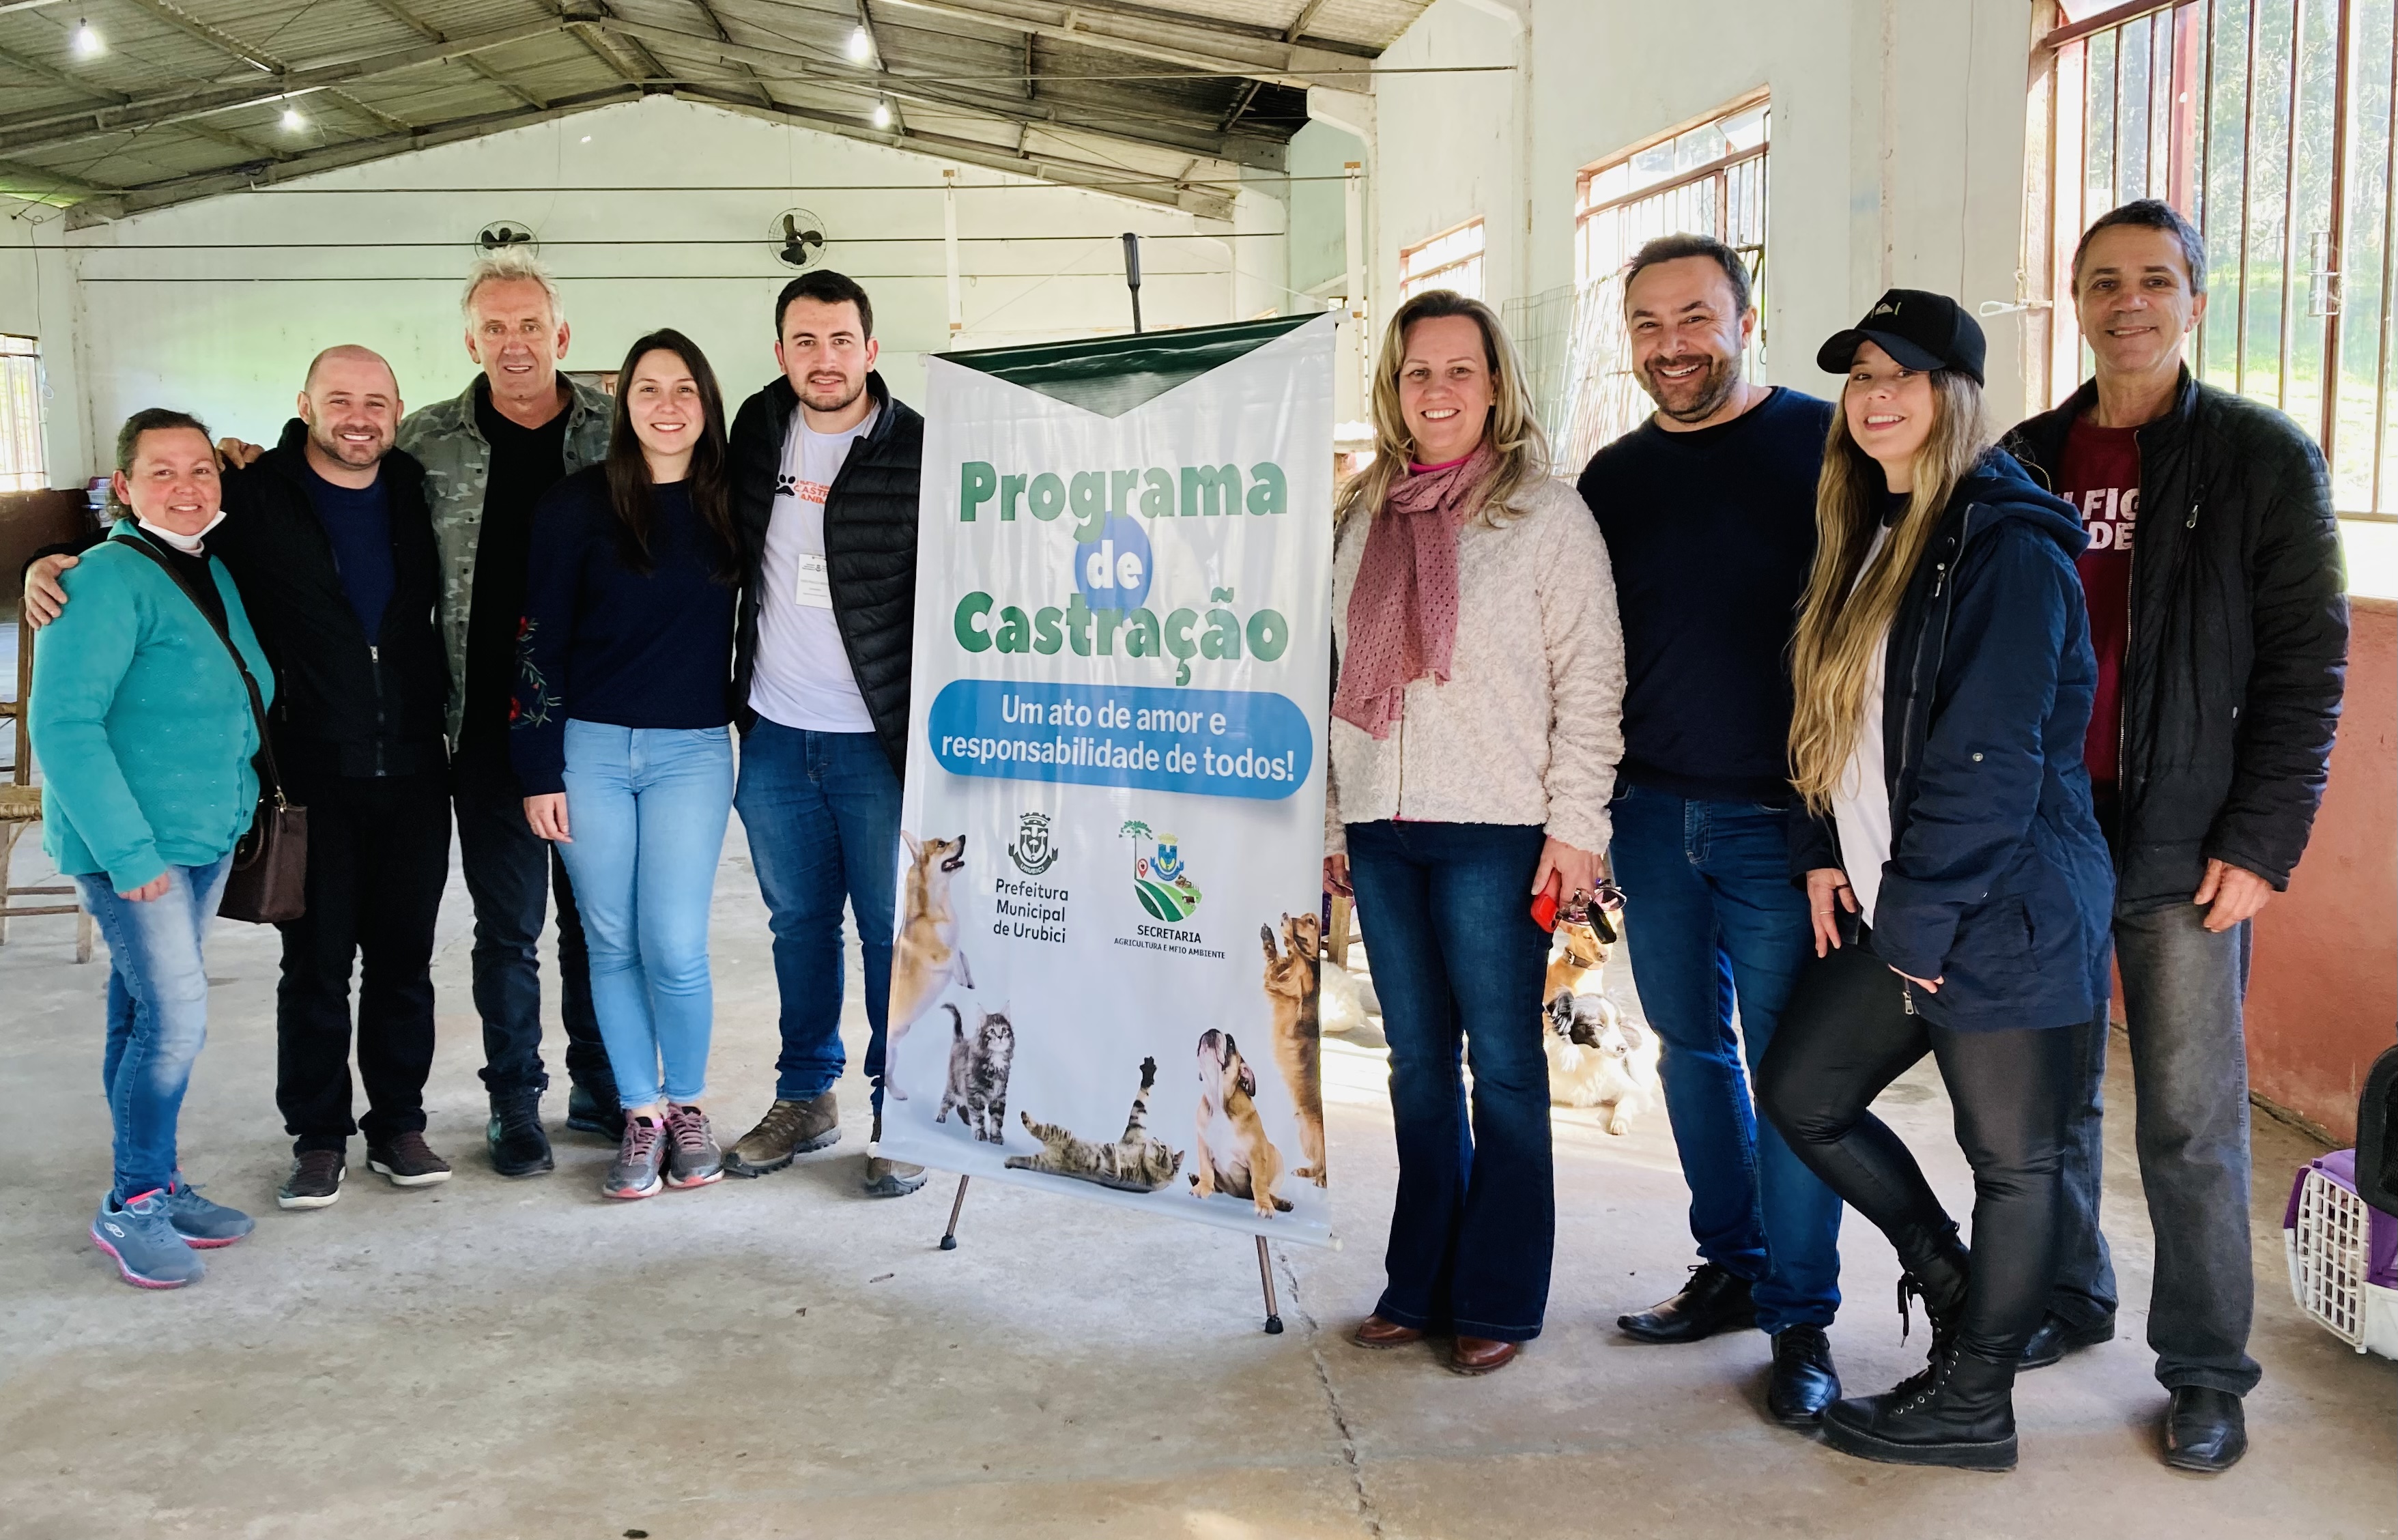 Prefeitura Municipal de Urubici | Programa de castração tem mais uma edição de sucesso em Urubici